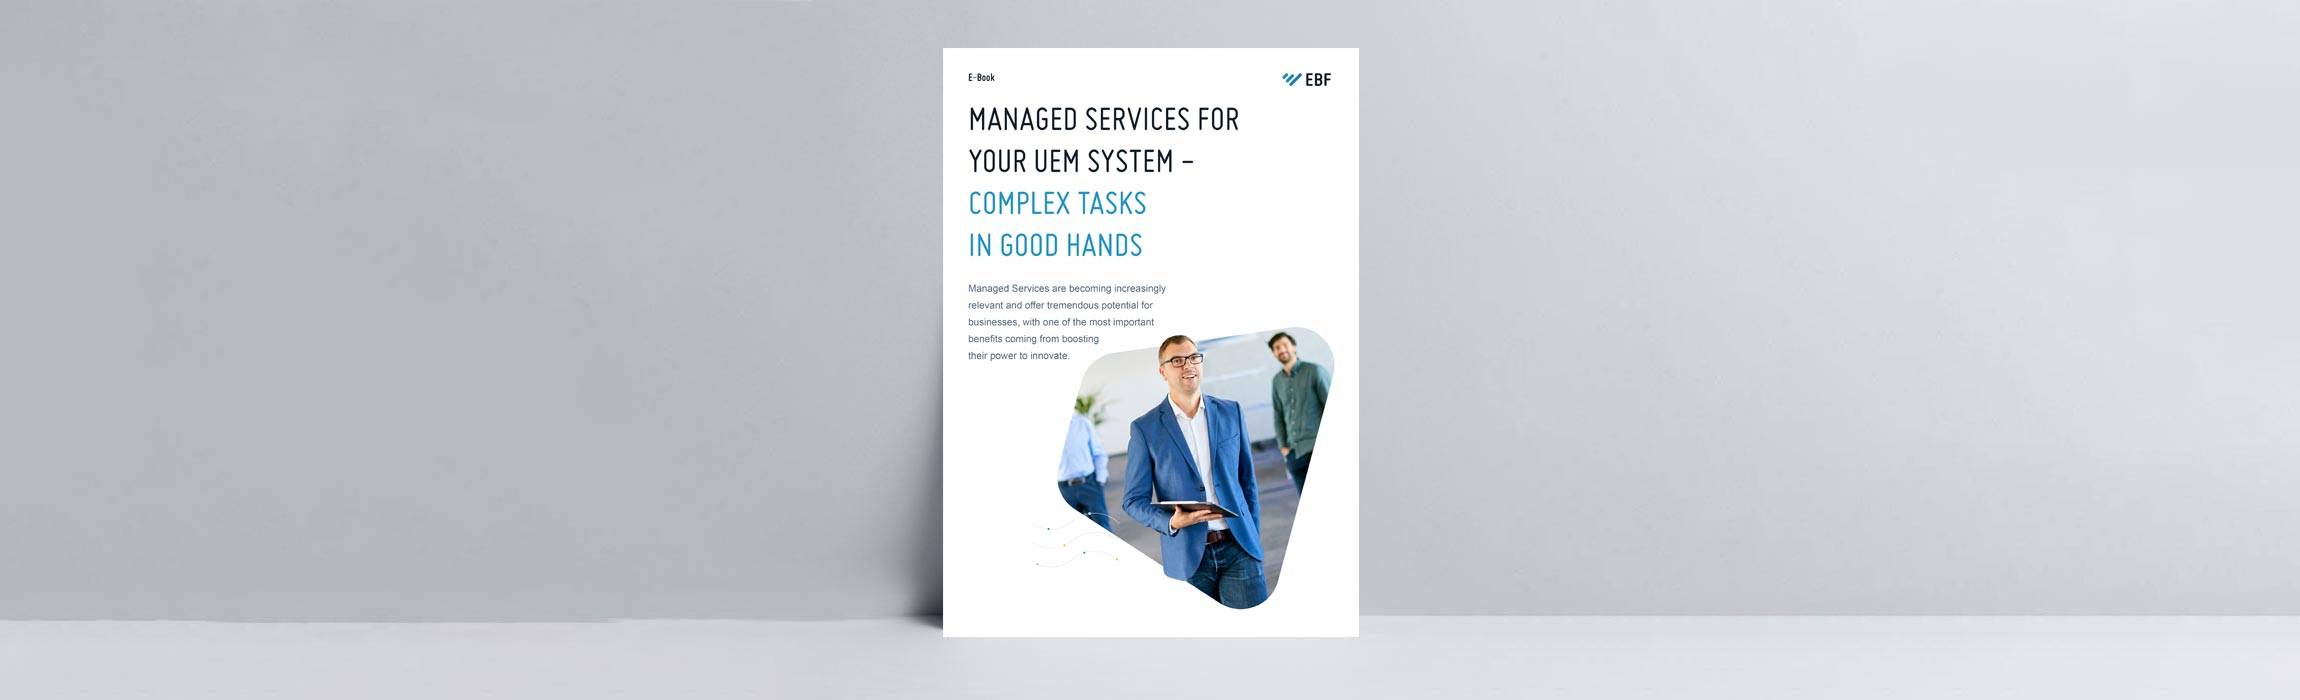 managed_services_whitepaper_en